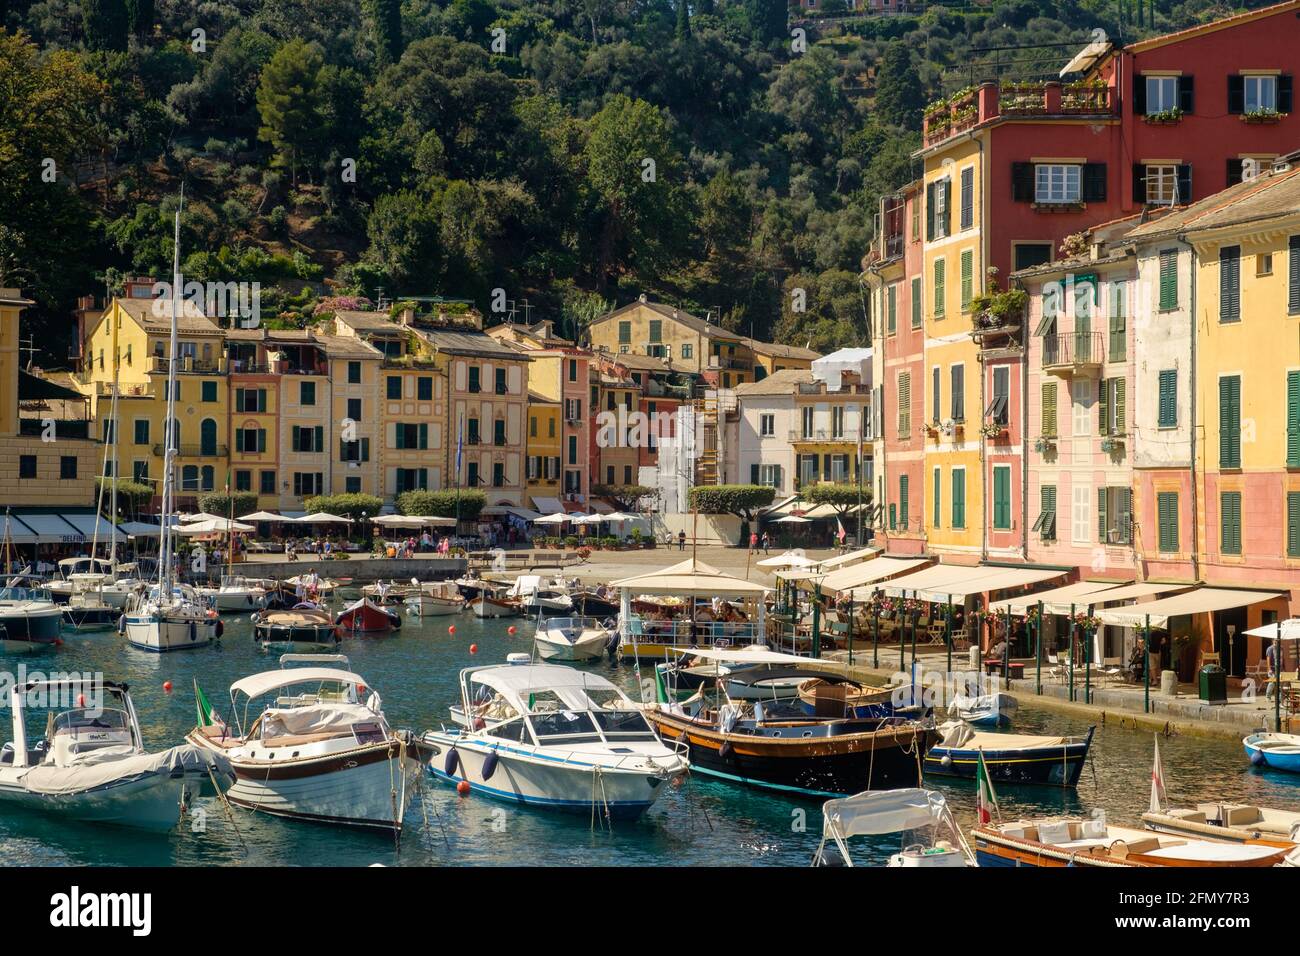 Vista del puerto deportivo y de la costa de la ciudad italiana de Portofino. Foto de stock